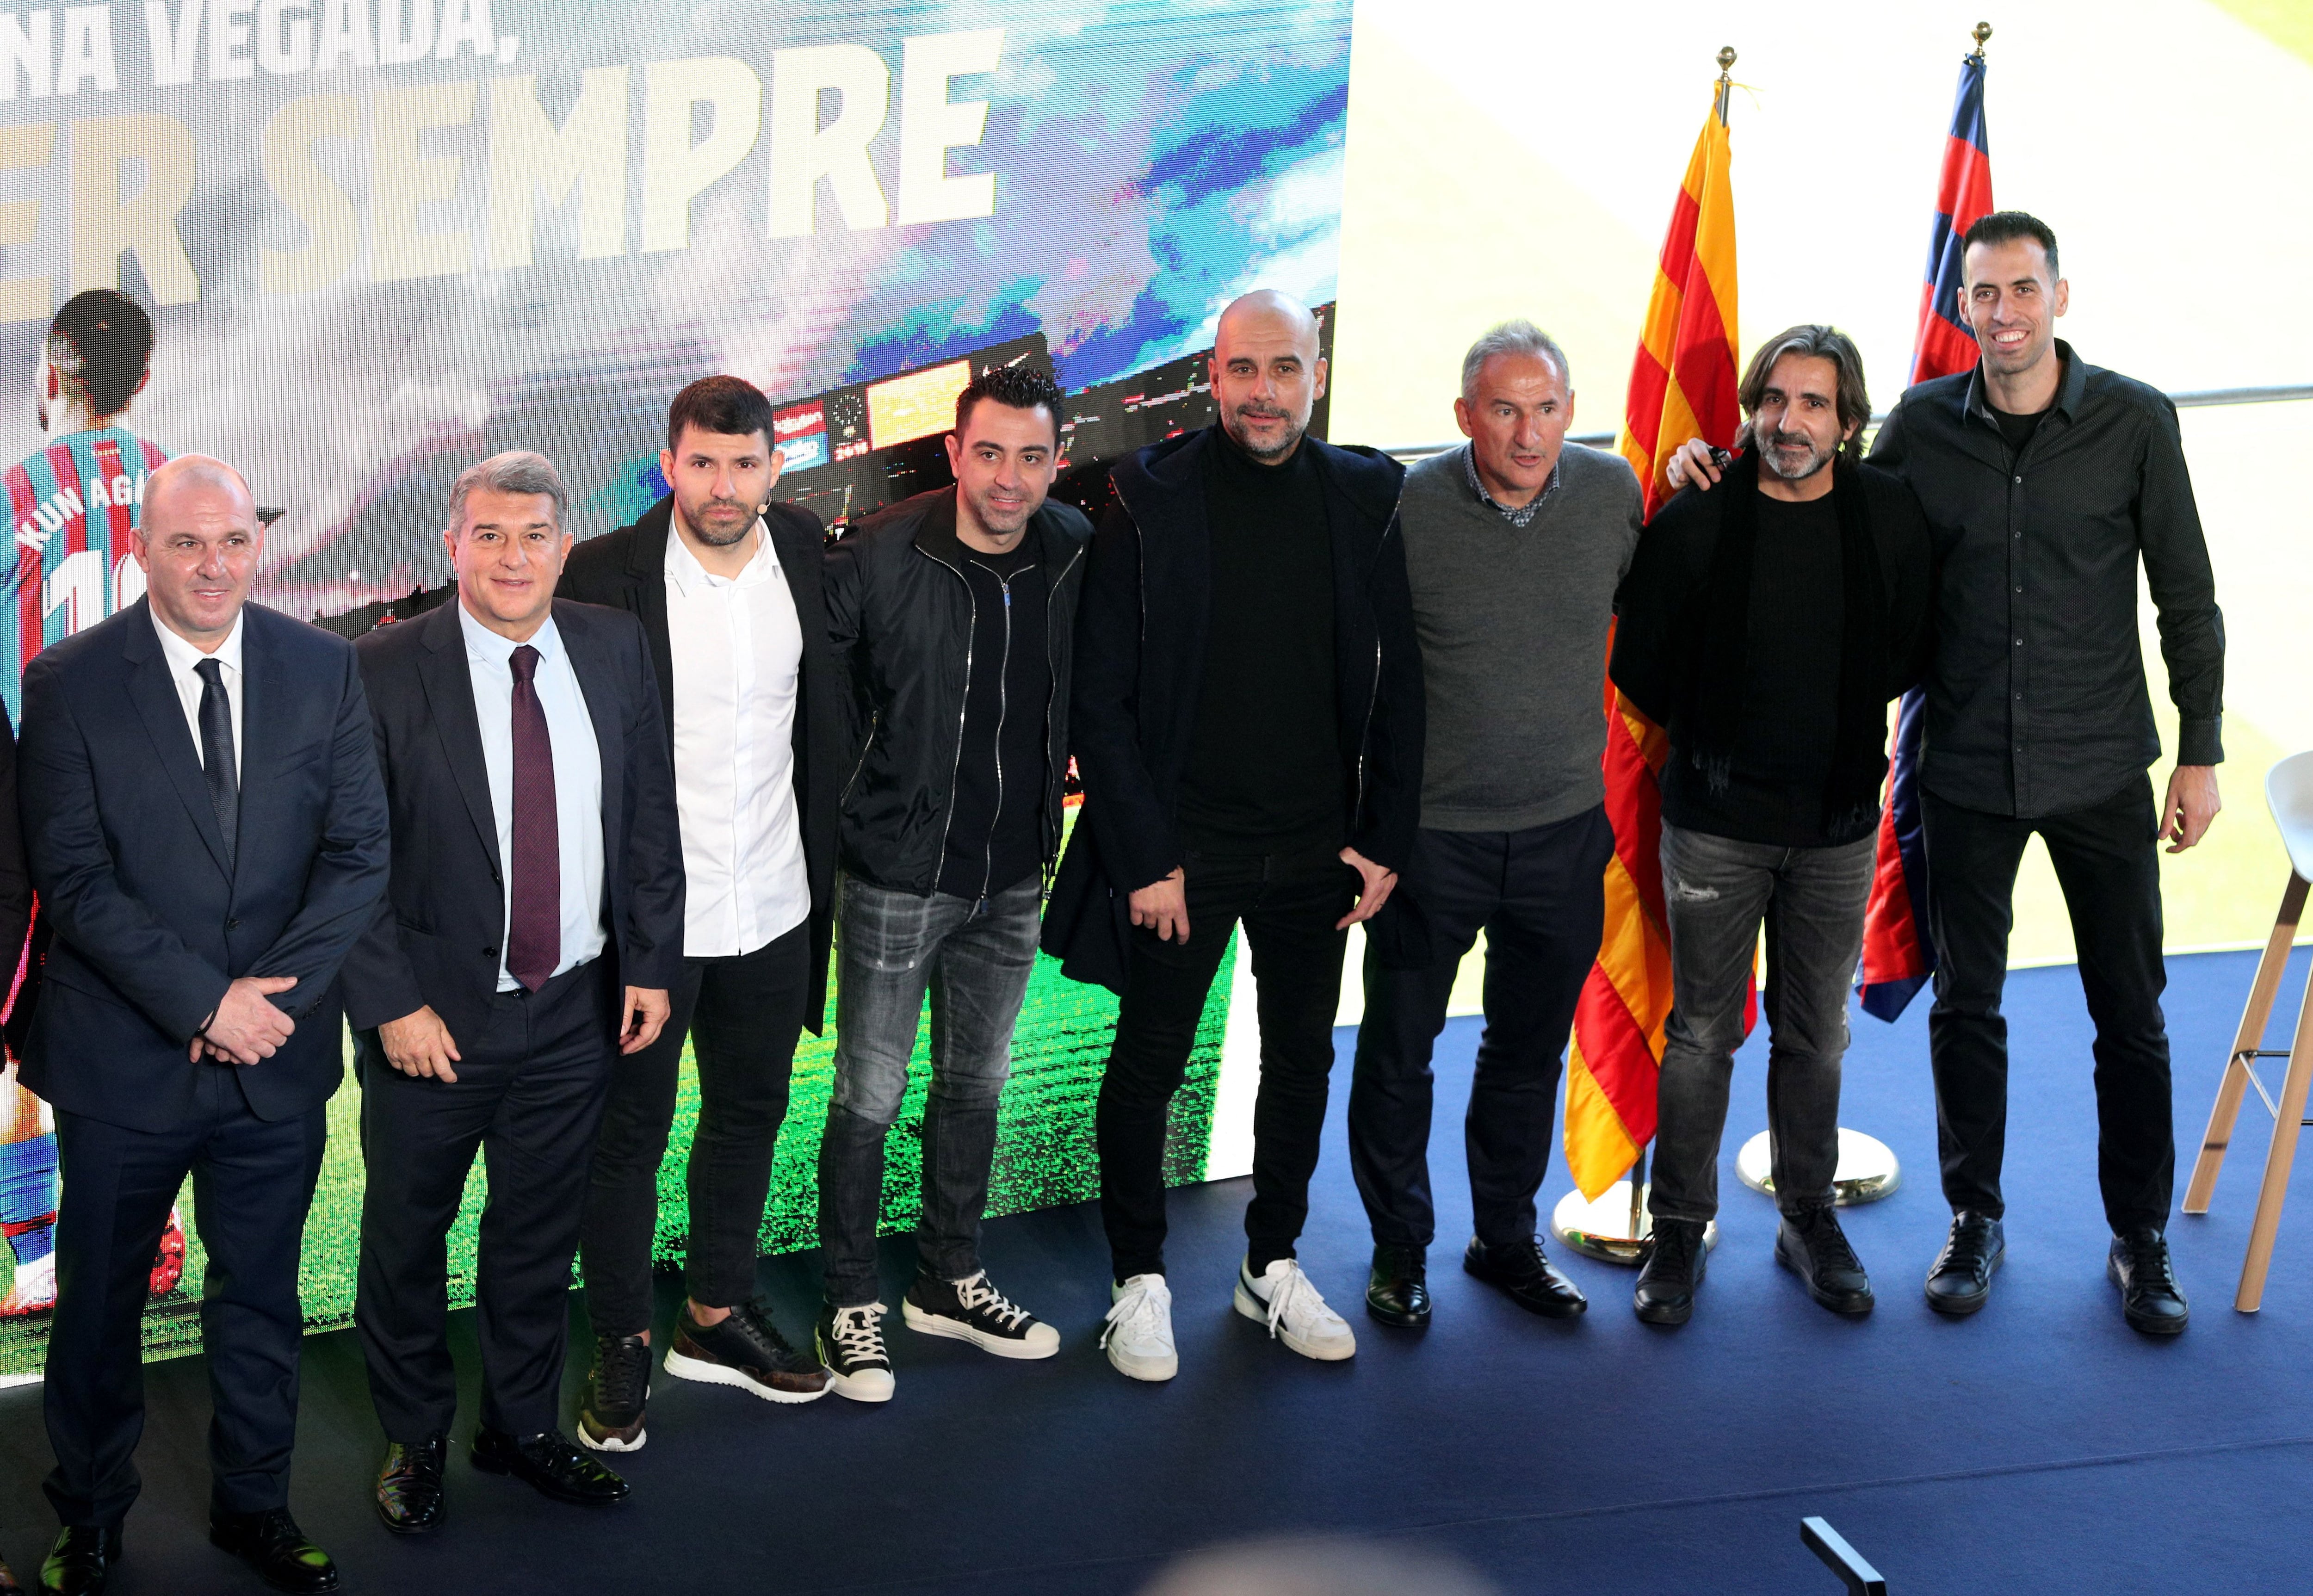 Xavi y Josep Guardiola estuvieron presentes en la conferencia de prensa de Sergio Agüero (Foto: REUTERS)